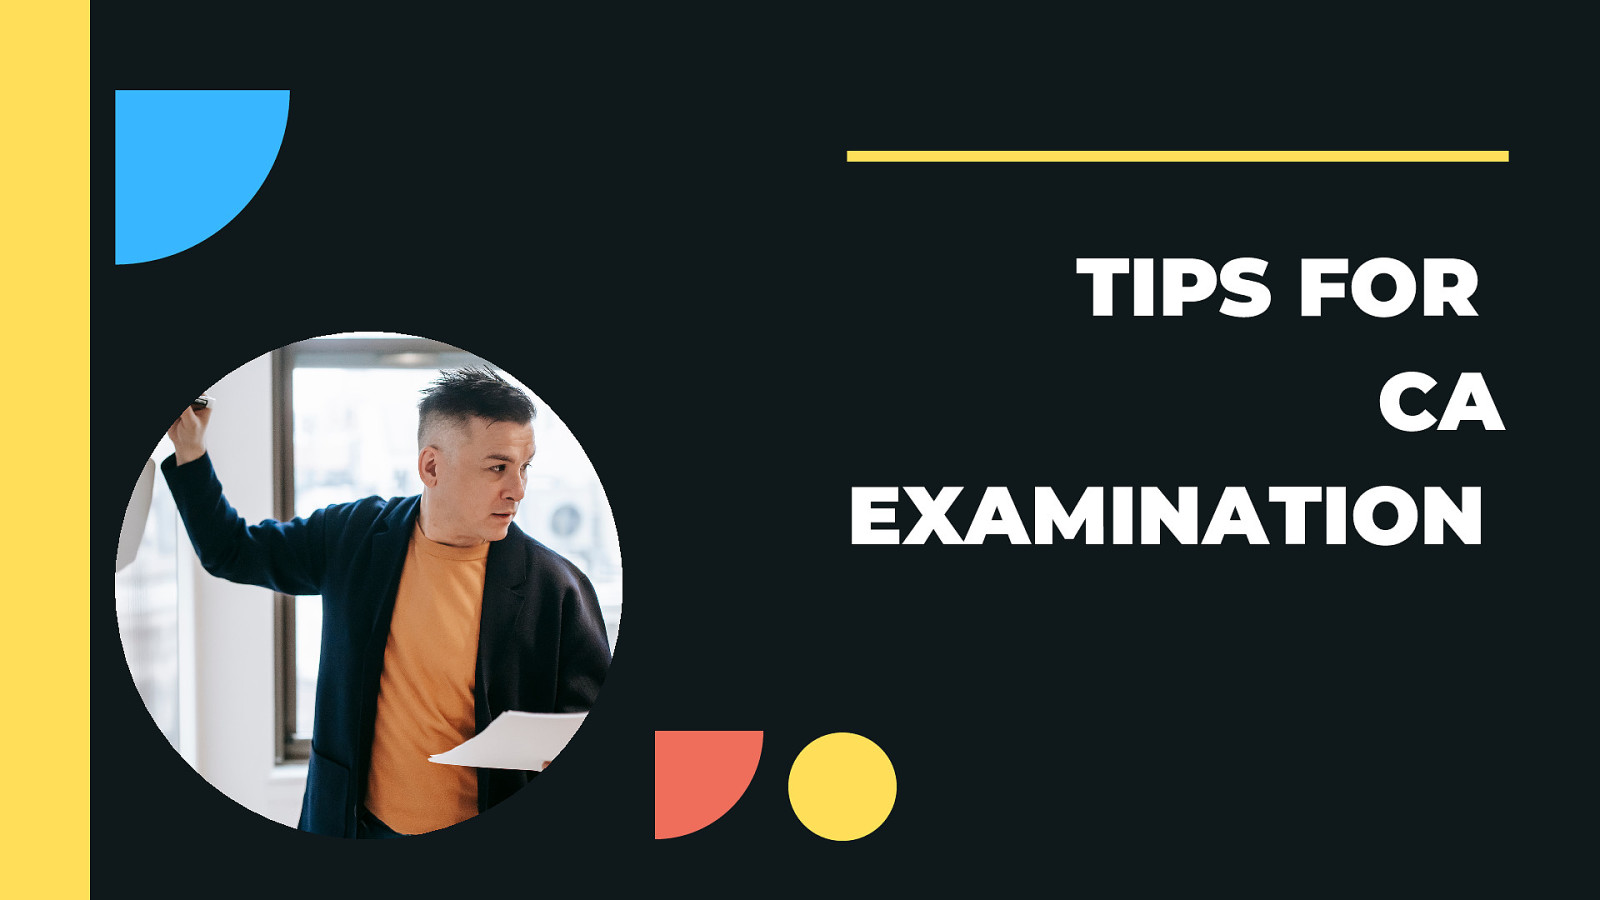 Tips for CA examination